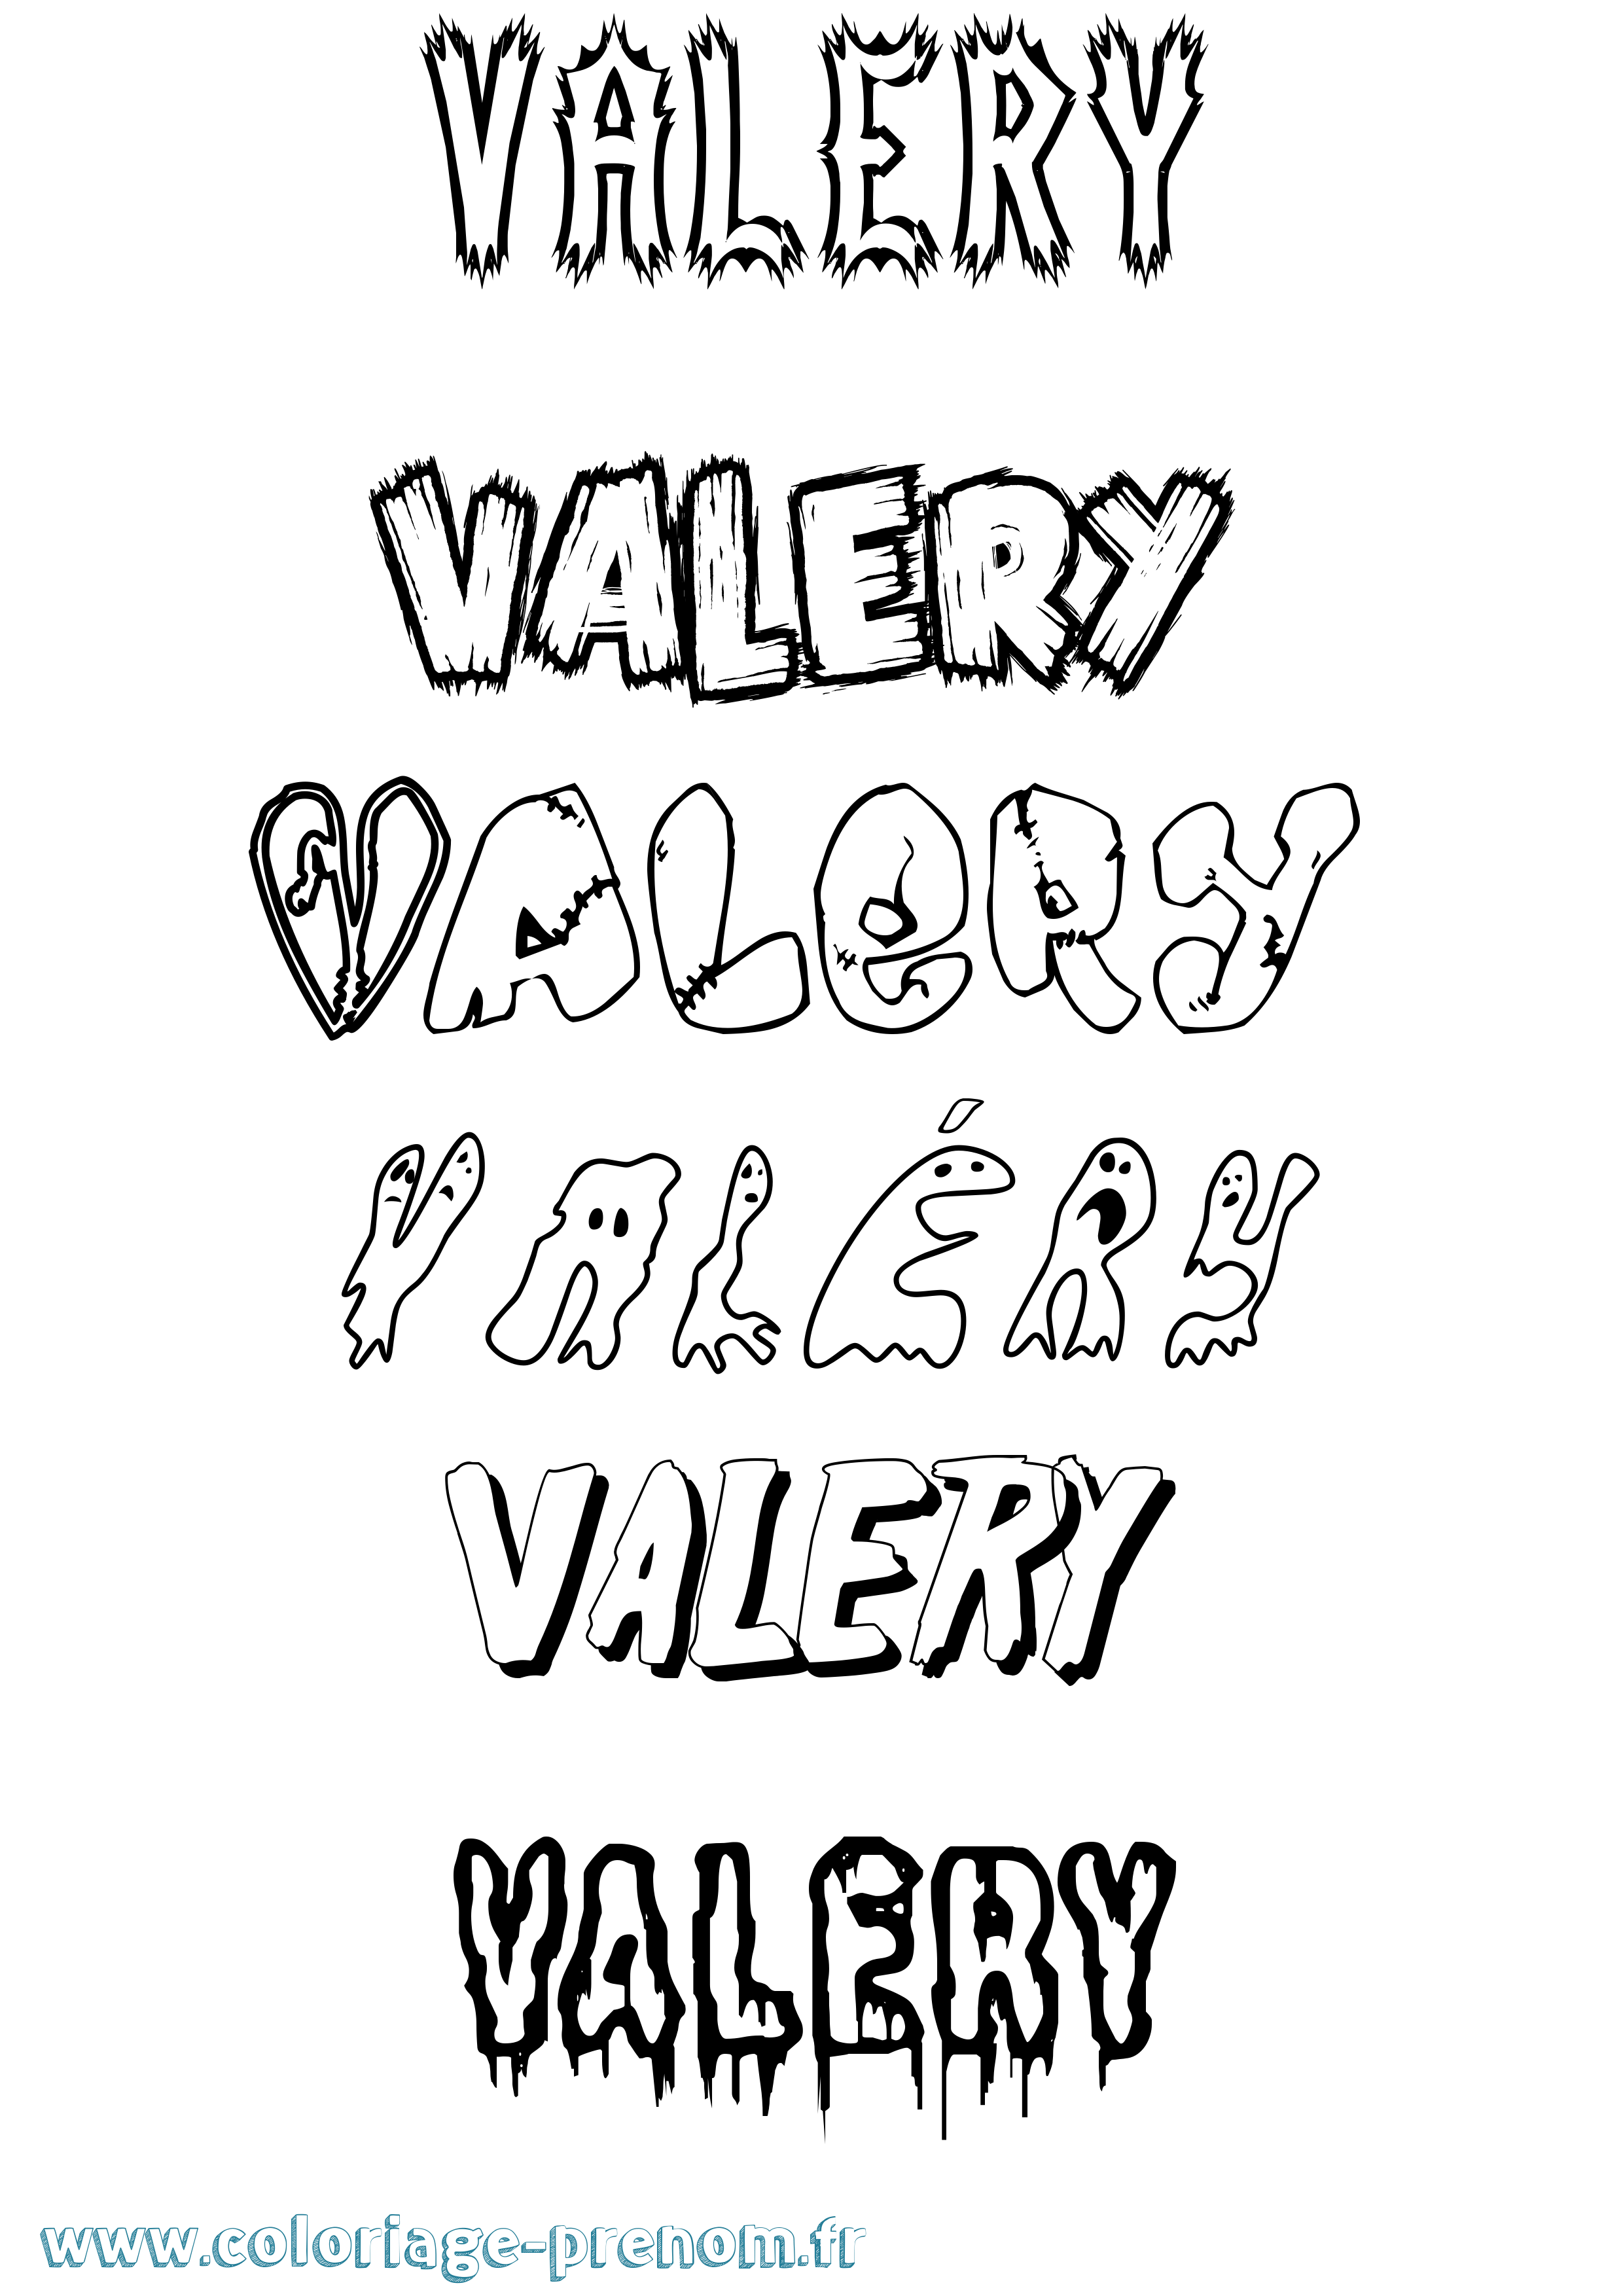 Coloriage prénom Valéry Frisson